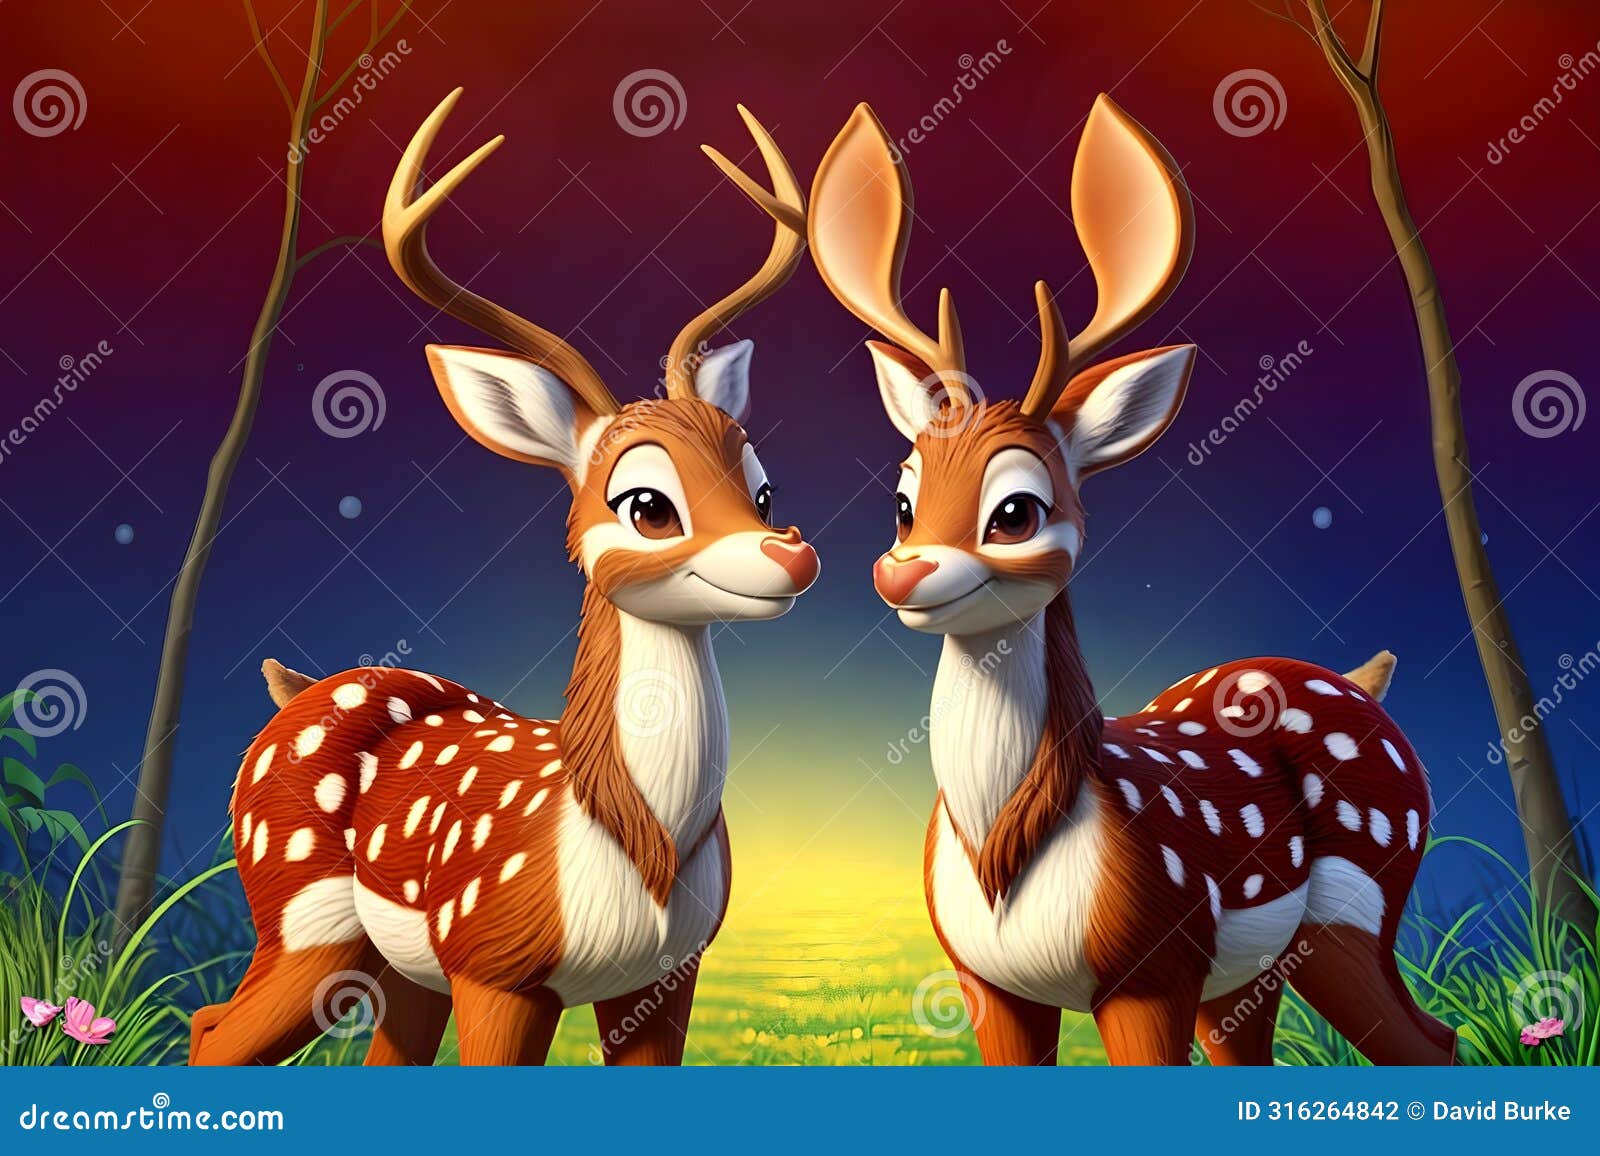 cartoon comic smile bambi deer antlers spotted natural habitat